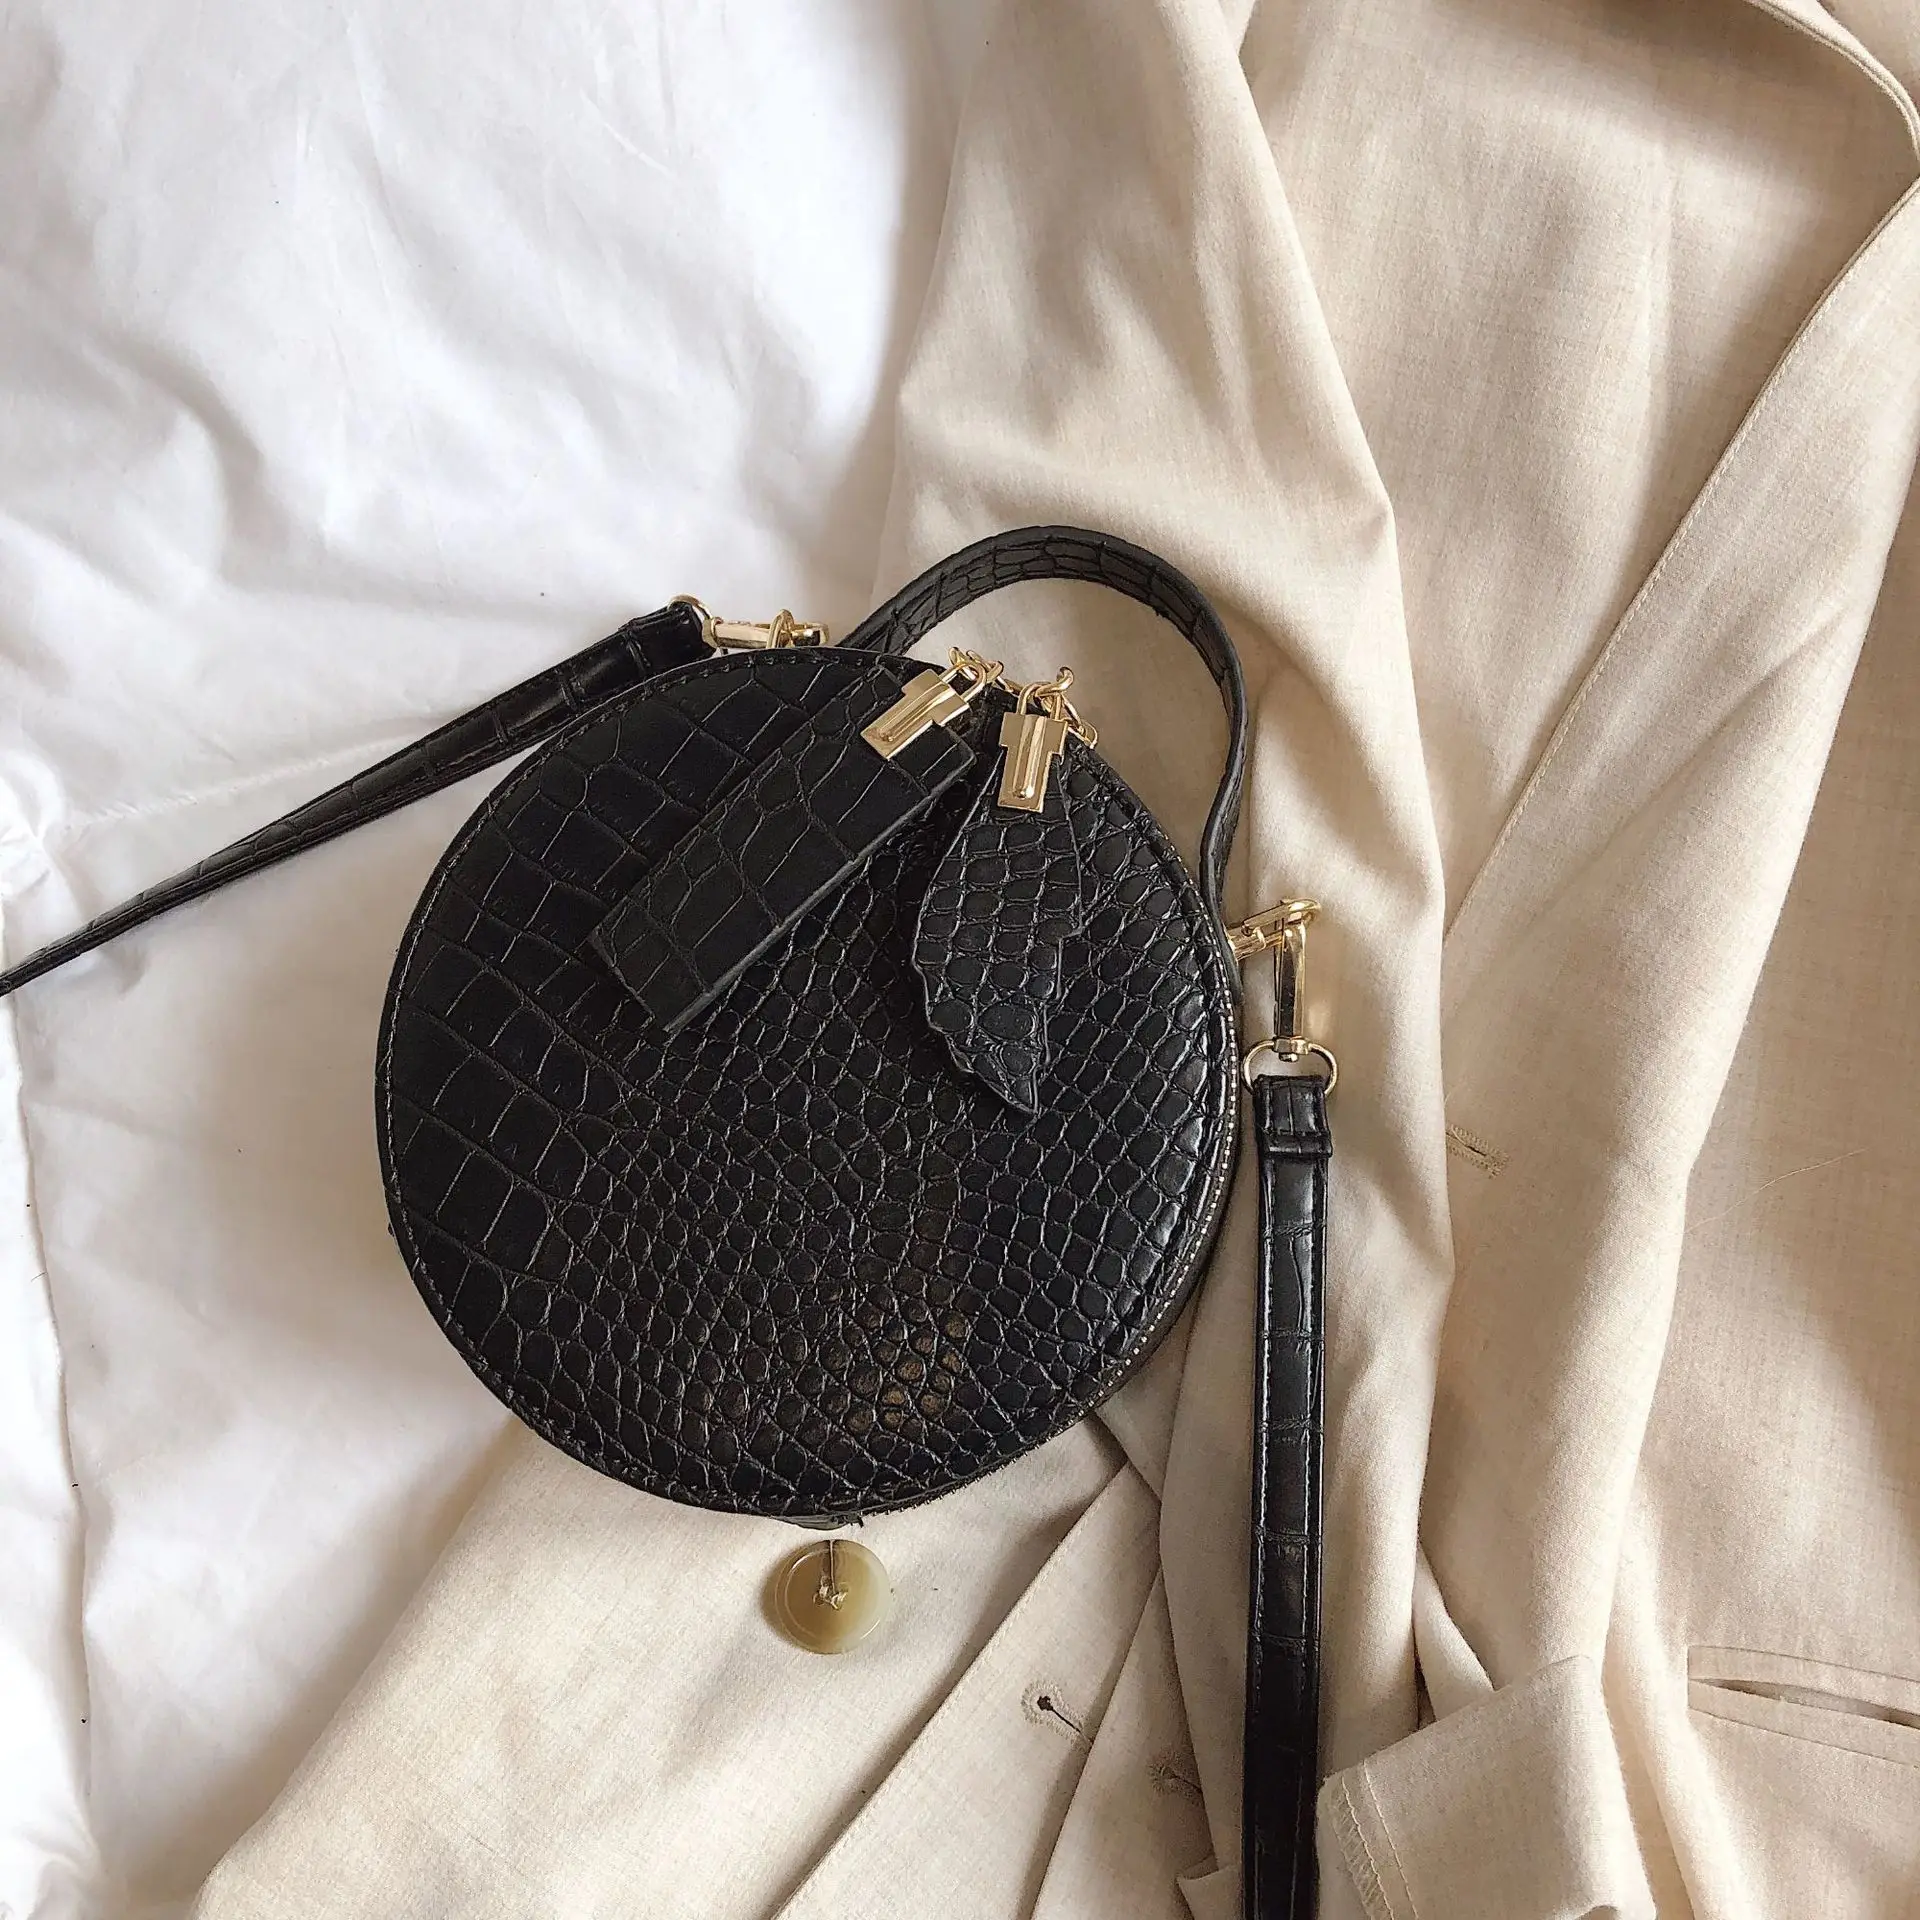 Новая мода крокодиловая сумка через плечо модная искусственная кожа ретро сумка маленькая круглая сумка женская сумка Качественная Сумочка Дамская ручная сумка - Цвет: B black